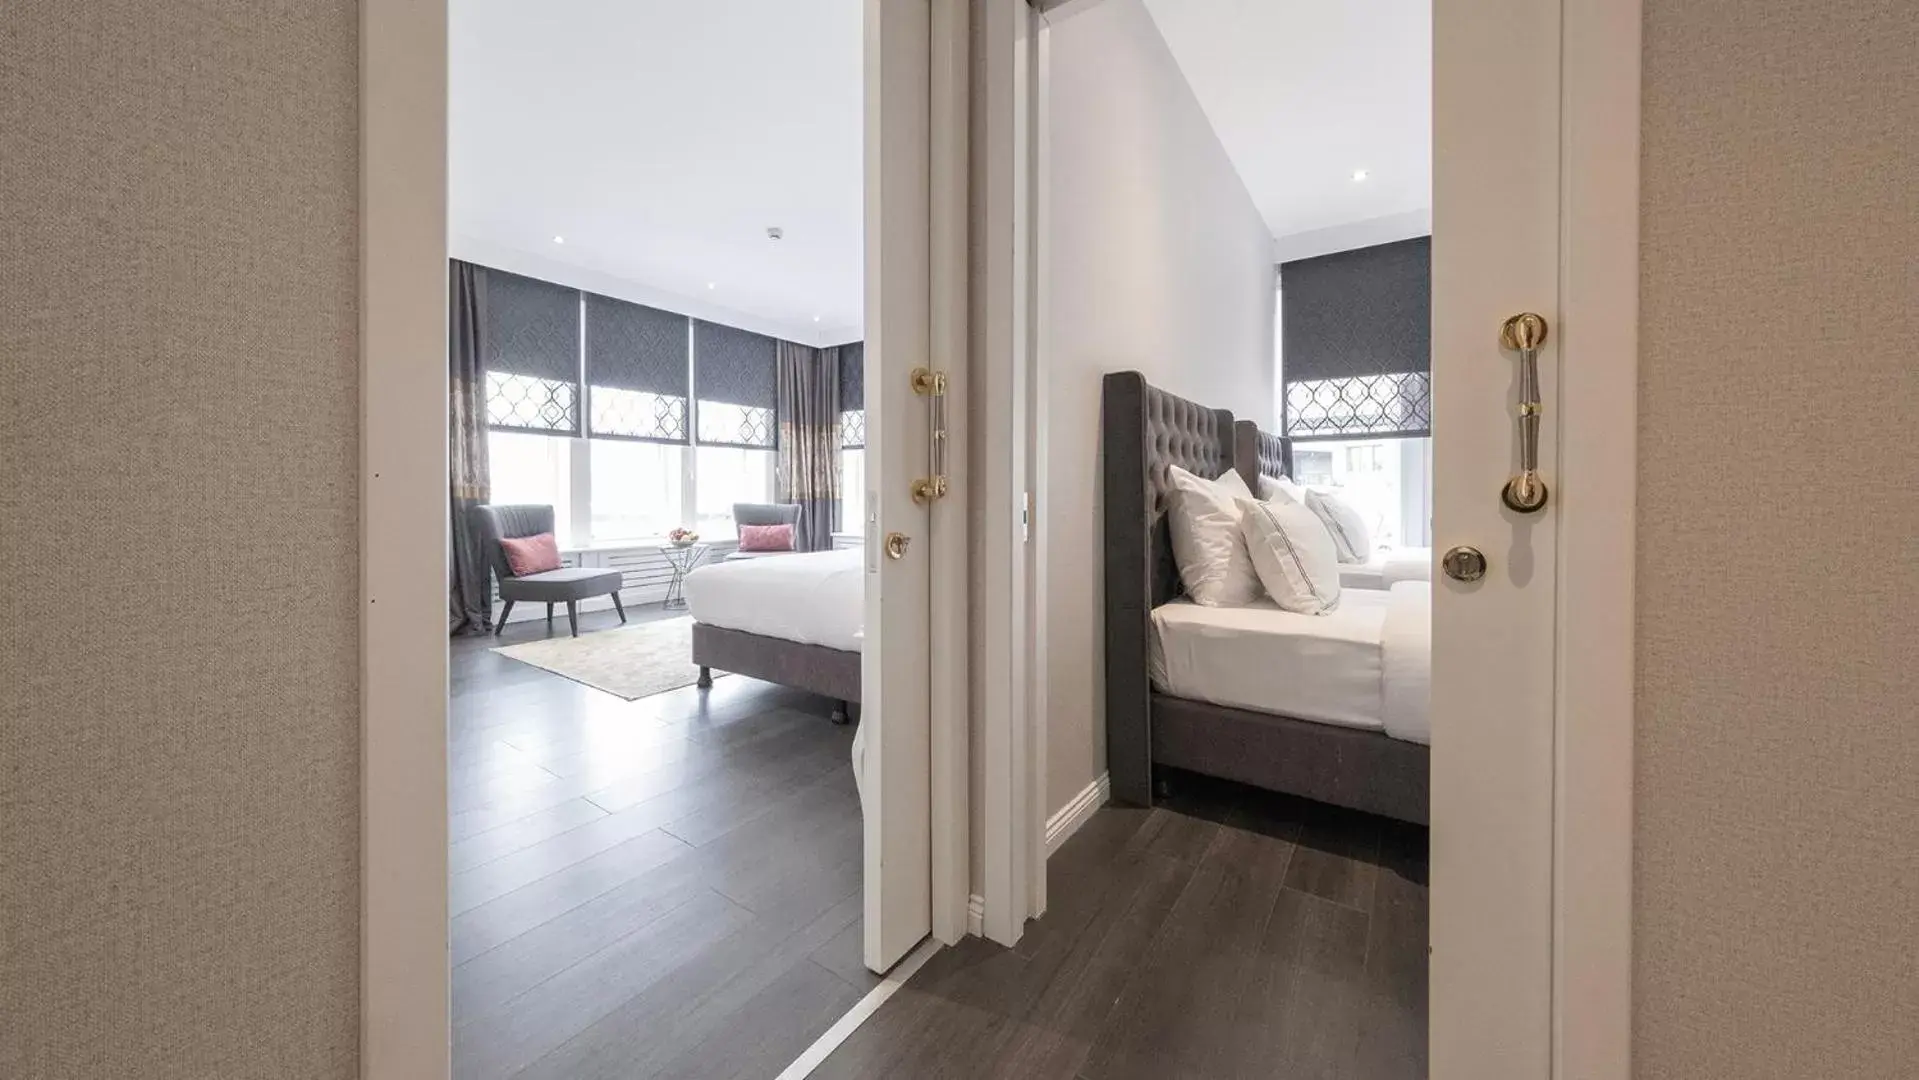 Photo of the whole room, Bathroom in Loop Hotel Bosphorus İstanbul